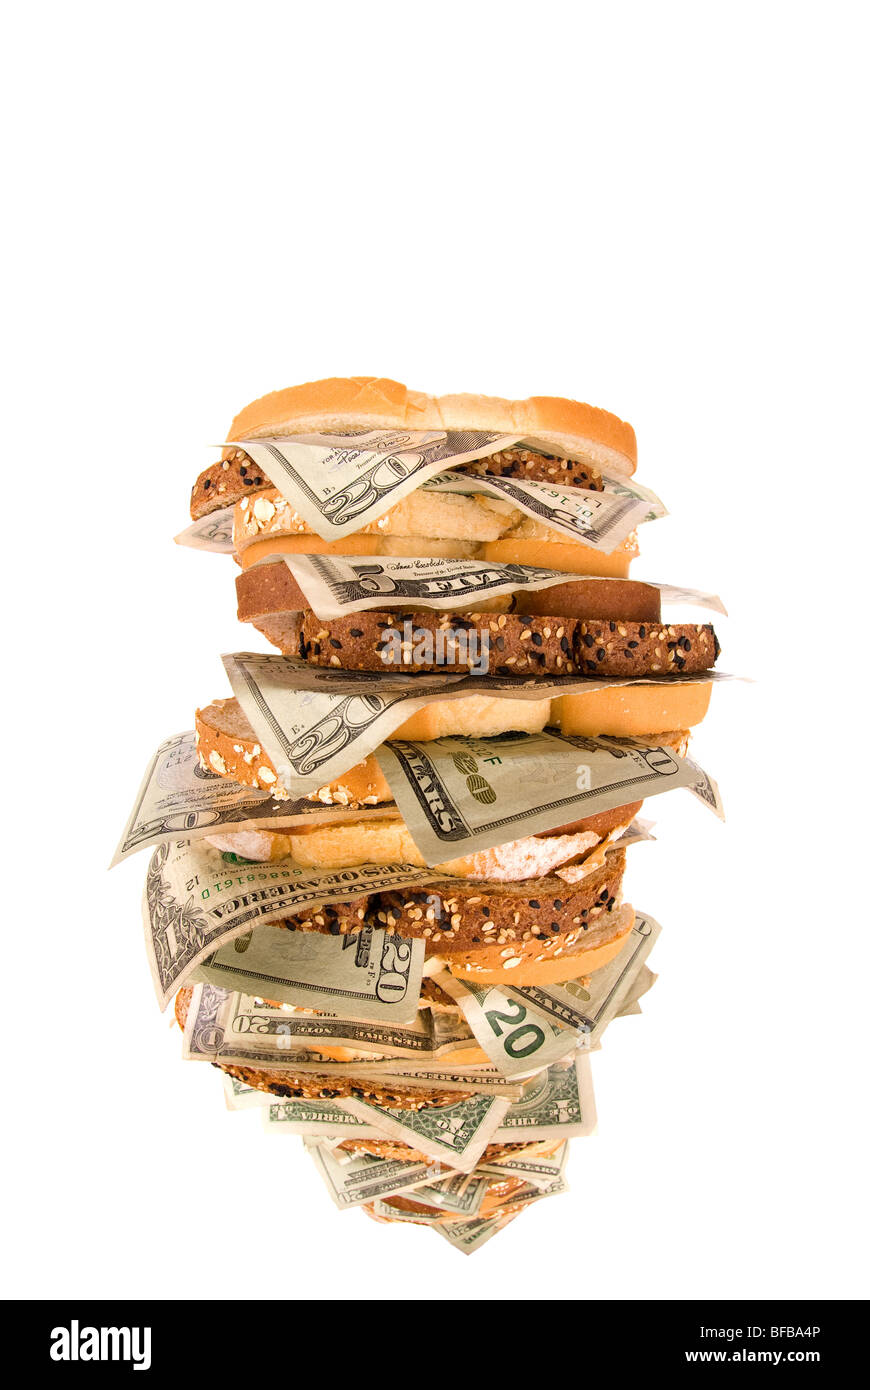 Ein Geld-Sandwich isoliert auf einem weißen Hintergrund. Schließt daraus, wie schnell Geld aufgefressen werden kann. Stockfoto